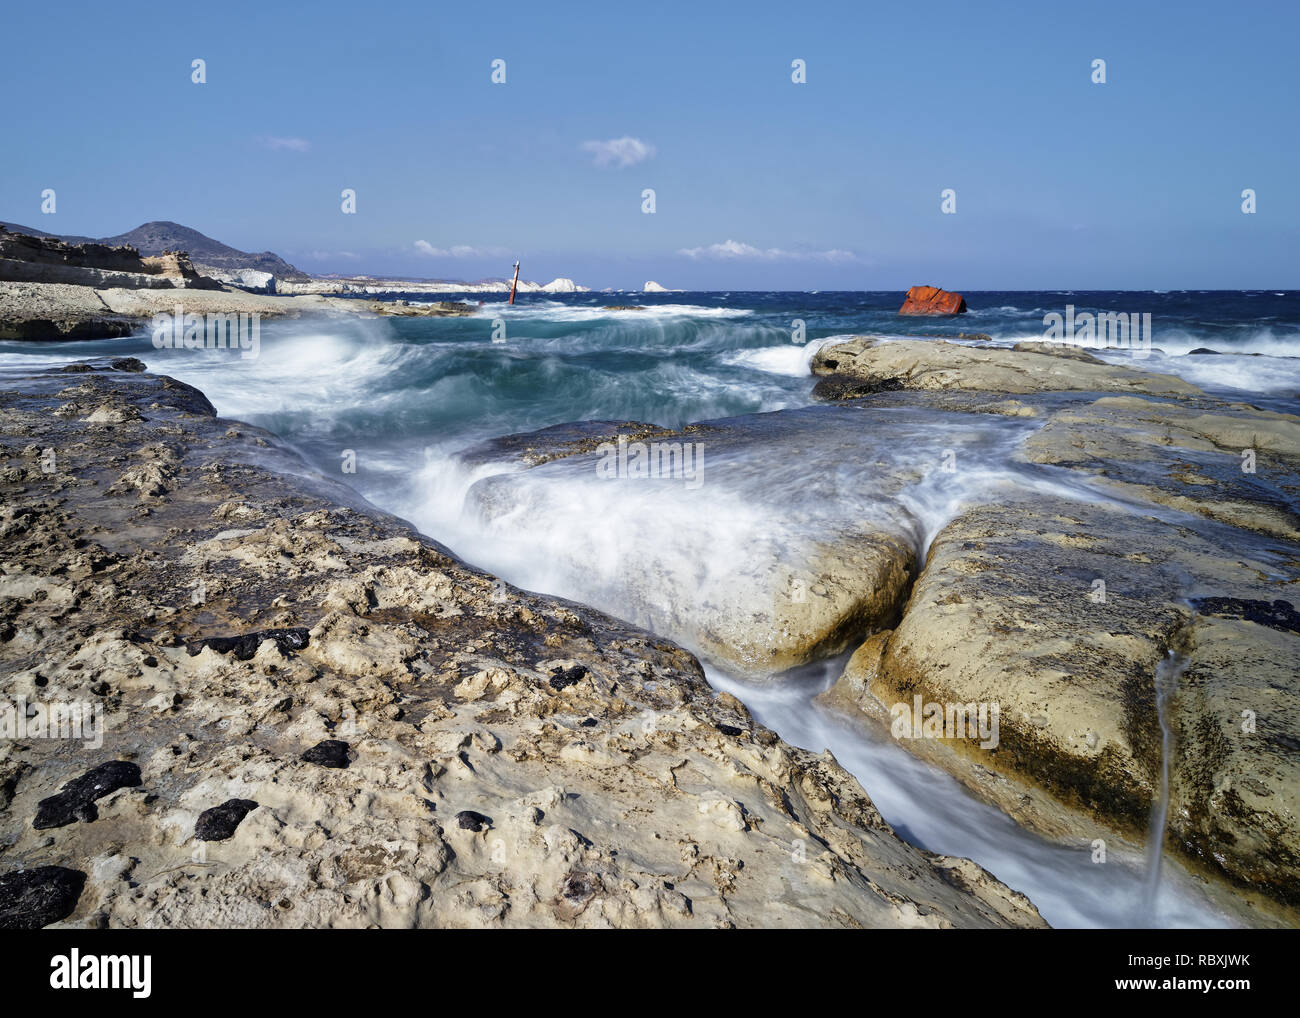 Bei starkem Wind, hohen Wellen über große Platten auf einem Strand von light rock fließen, Wasser Bewegung in lange Exposition, im Hintergrund ein schiffswrack - Ort: Stockfoto